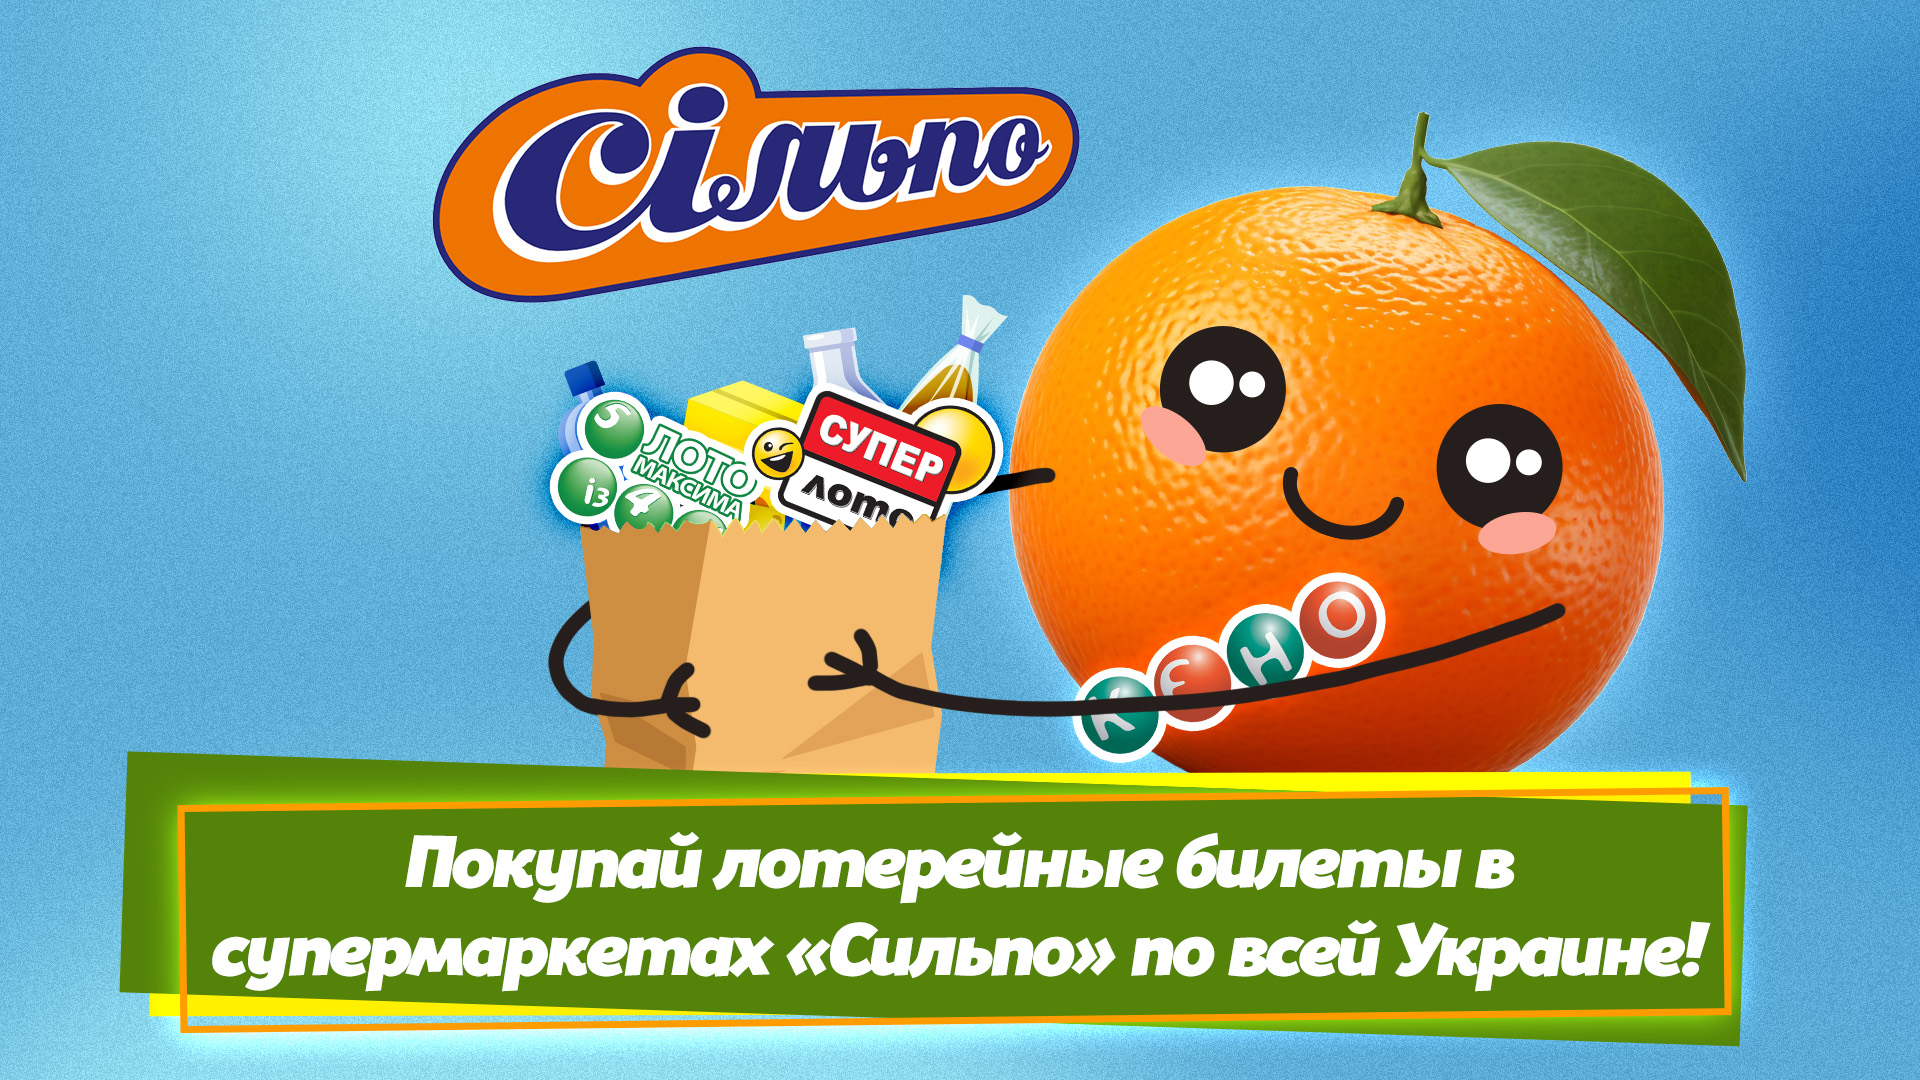 Покупай лотерейные билеты в супермаркетах "Сильпо" по всей Украине